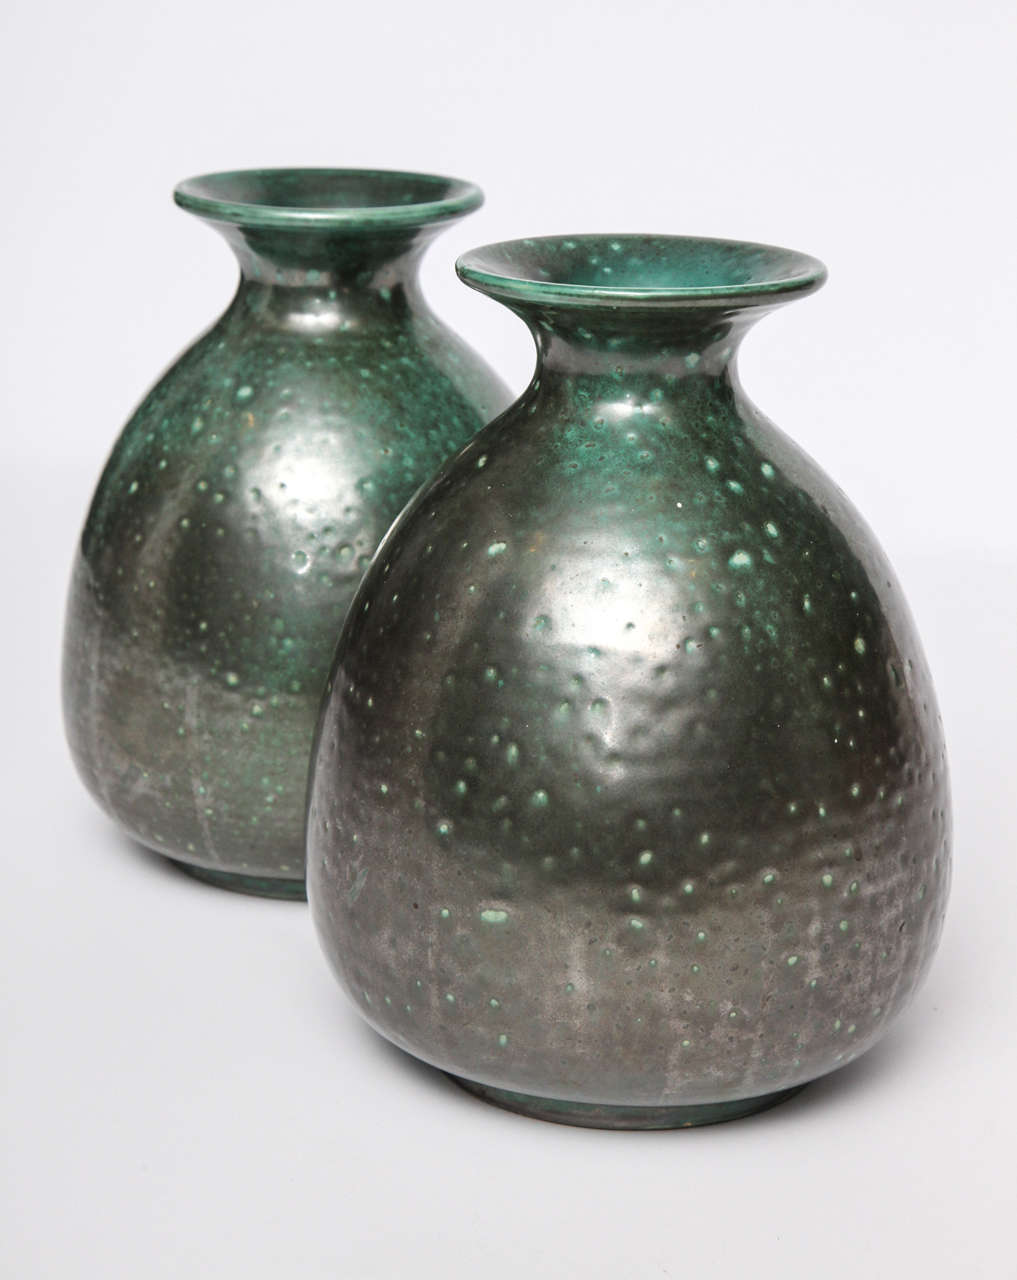 French CAB (Céramique d’Art de Bordeaux), Pair of glazed ceramic vases, France, c. 1930